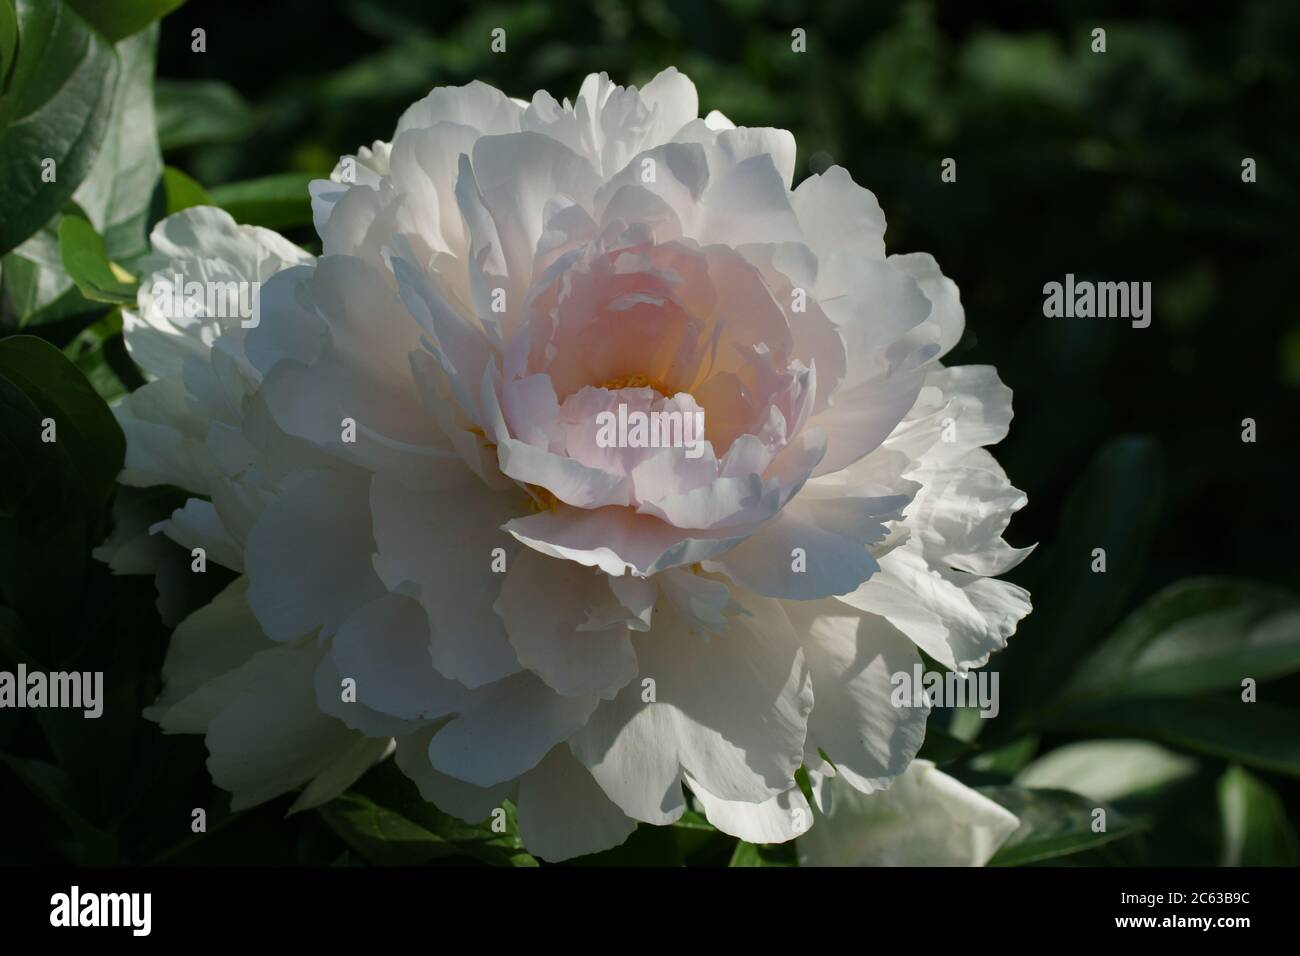 Paeonia Reine Deluxe. Doble flor de peonía rosa. Paeonia lactiflora (peonía China o peonía común de jardín). Foto de stock